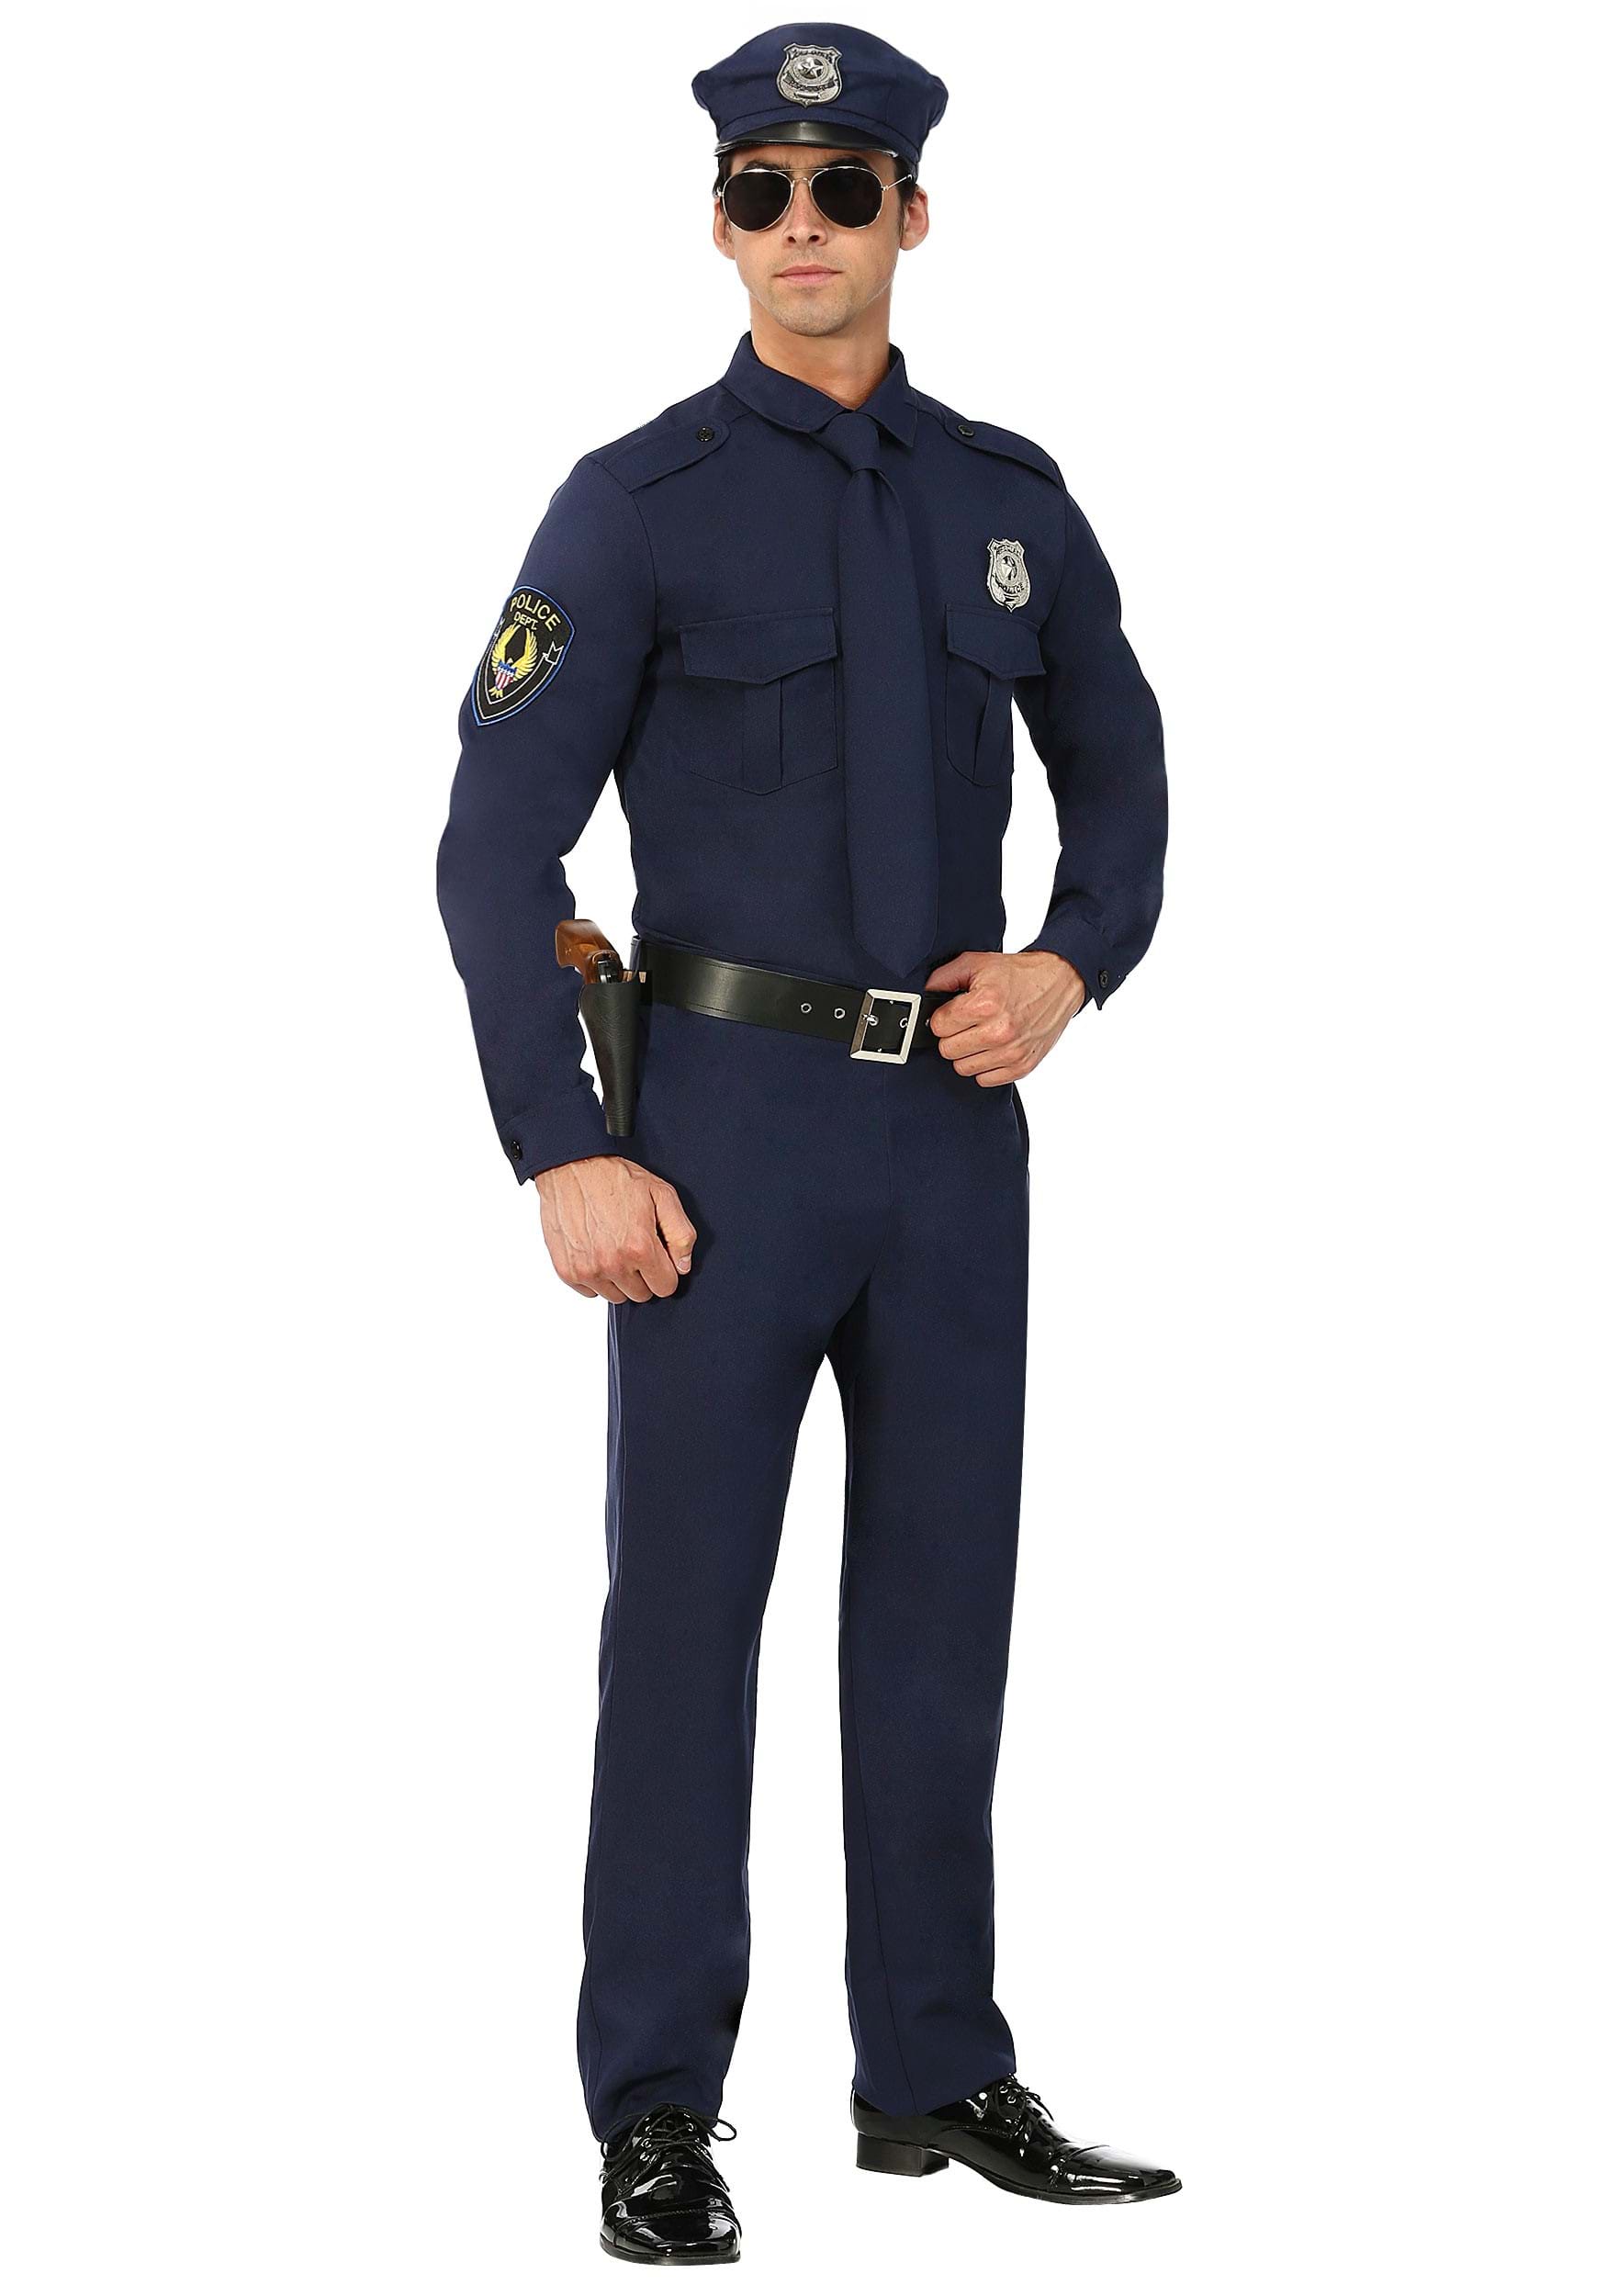 Men's Cop Costume Adult Halloween Police Costume